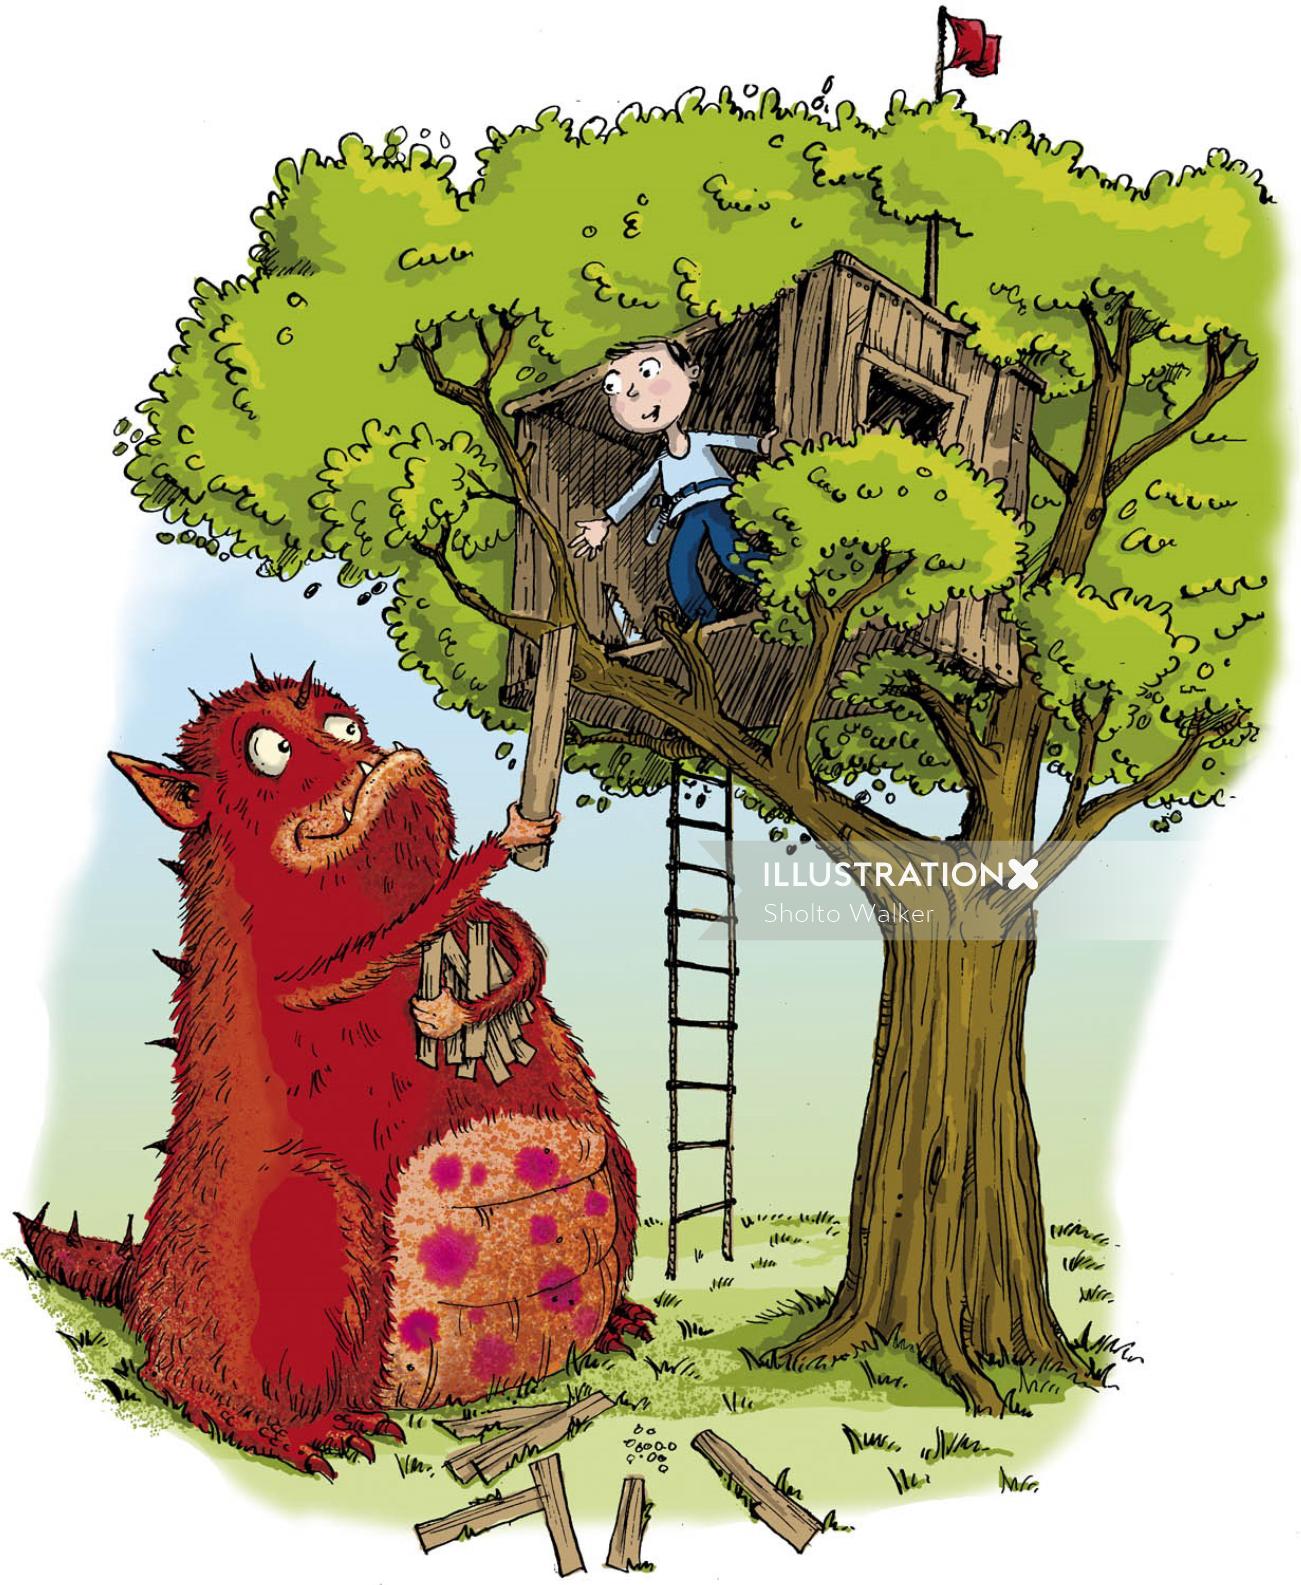 Menino e monstro construindo uma casa na árvore - ilustração dos desenhos animados por Sholto Walker